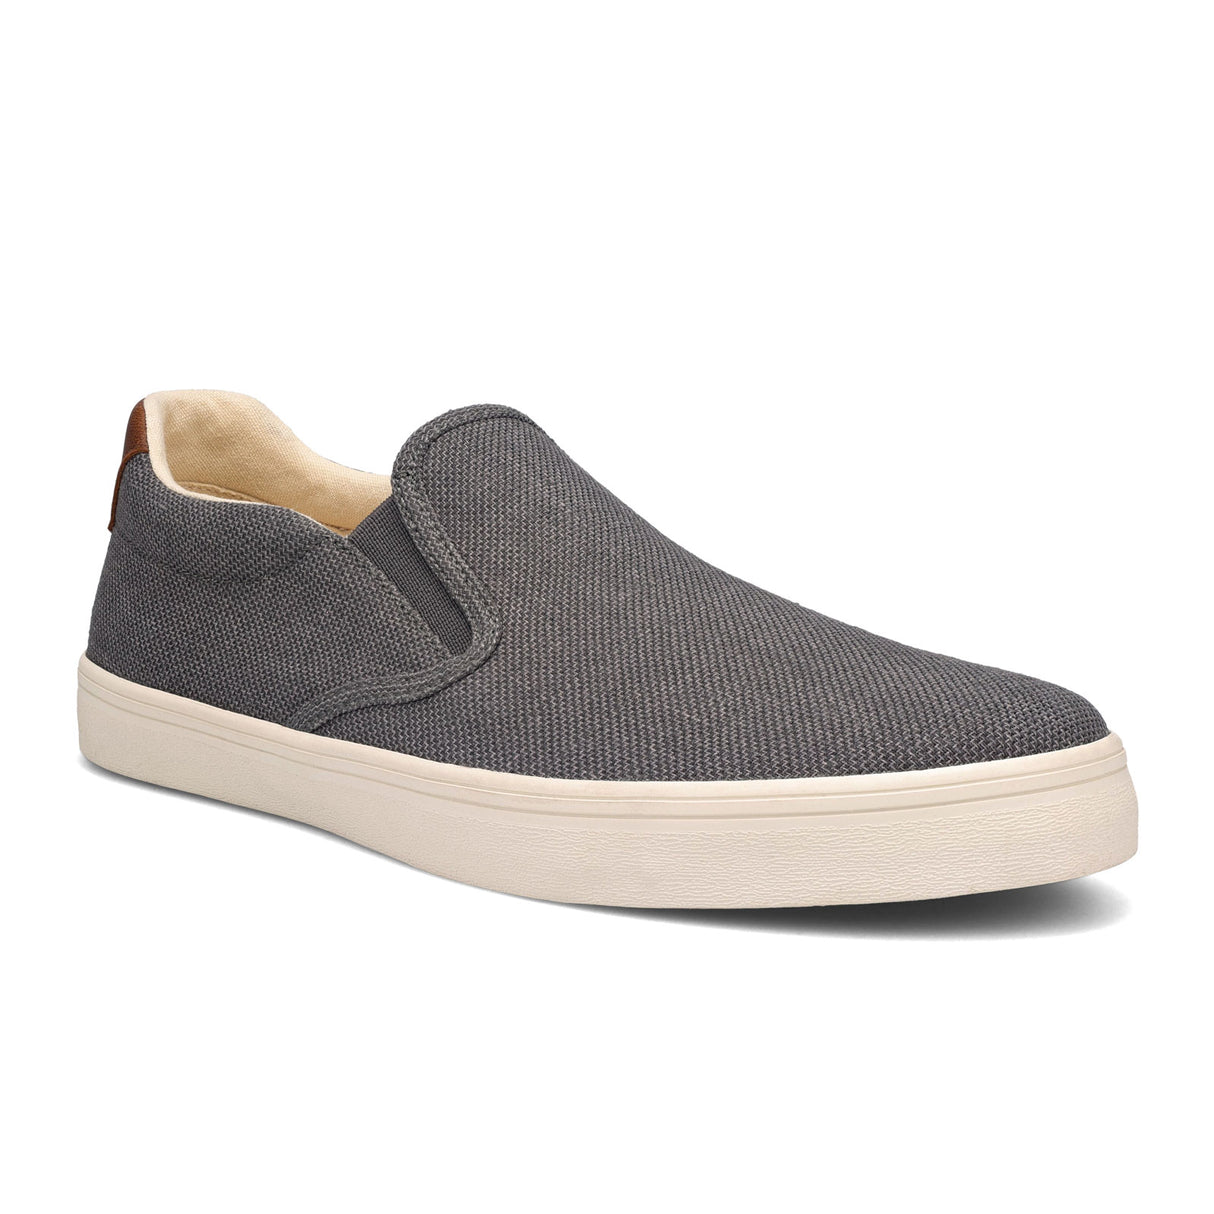 Taos Hutch Slip On Sneaker (Men) - Grey Dress-Casual - Sneakers - The Heel Shoe Fitters